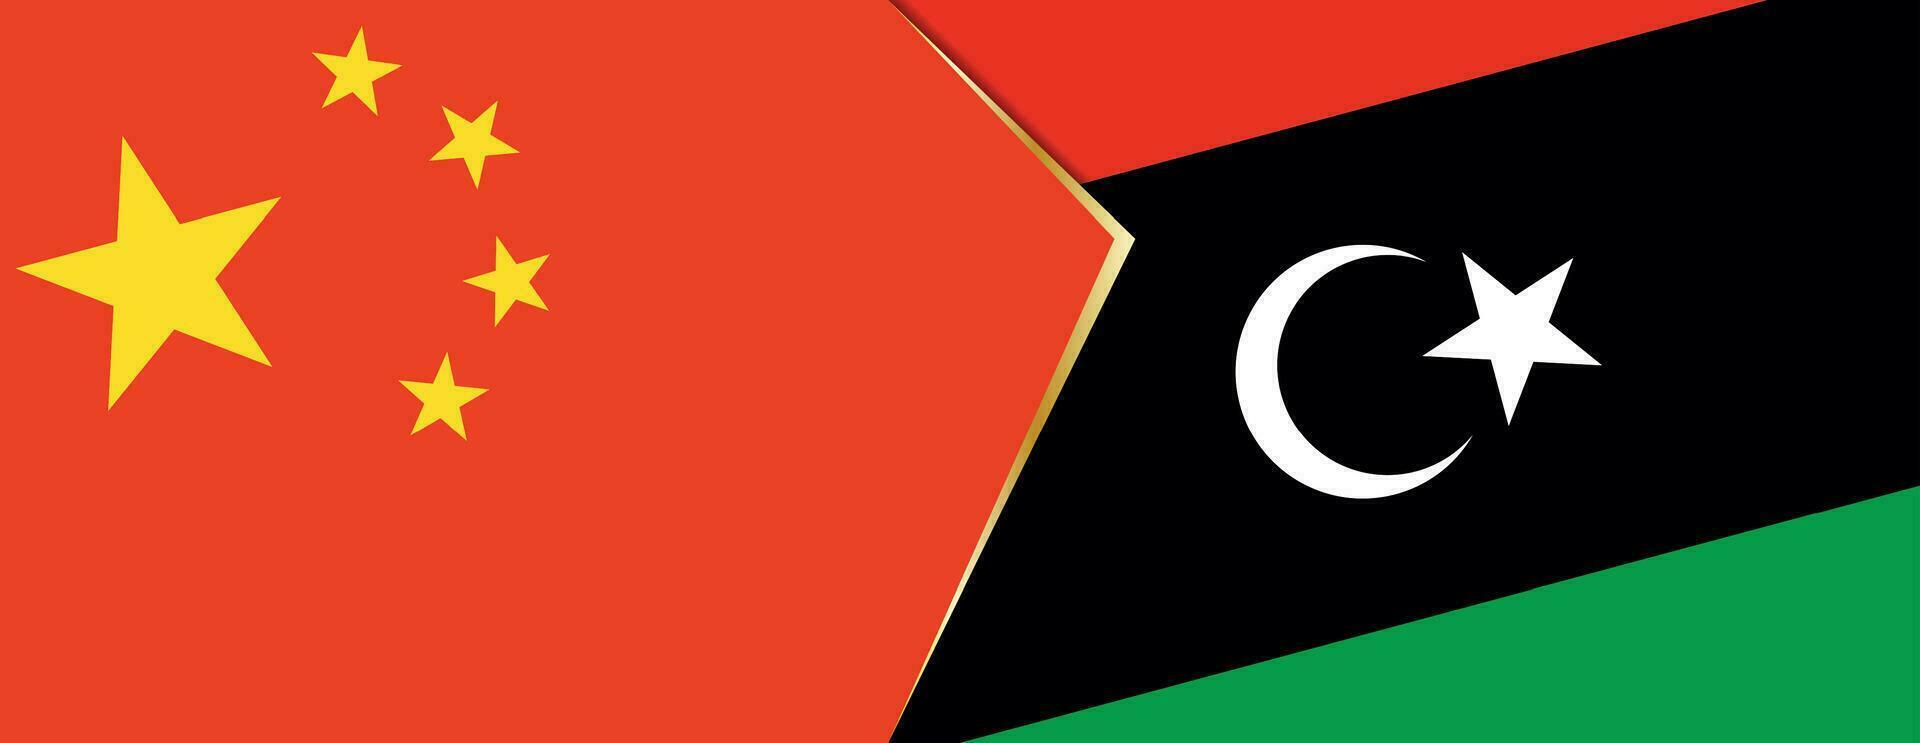 Cina e Libia bandiere, Due vettore bandiere.